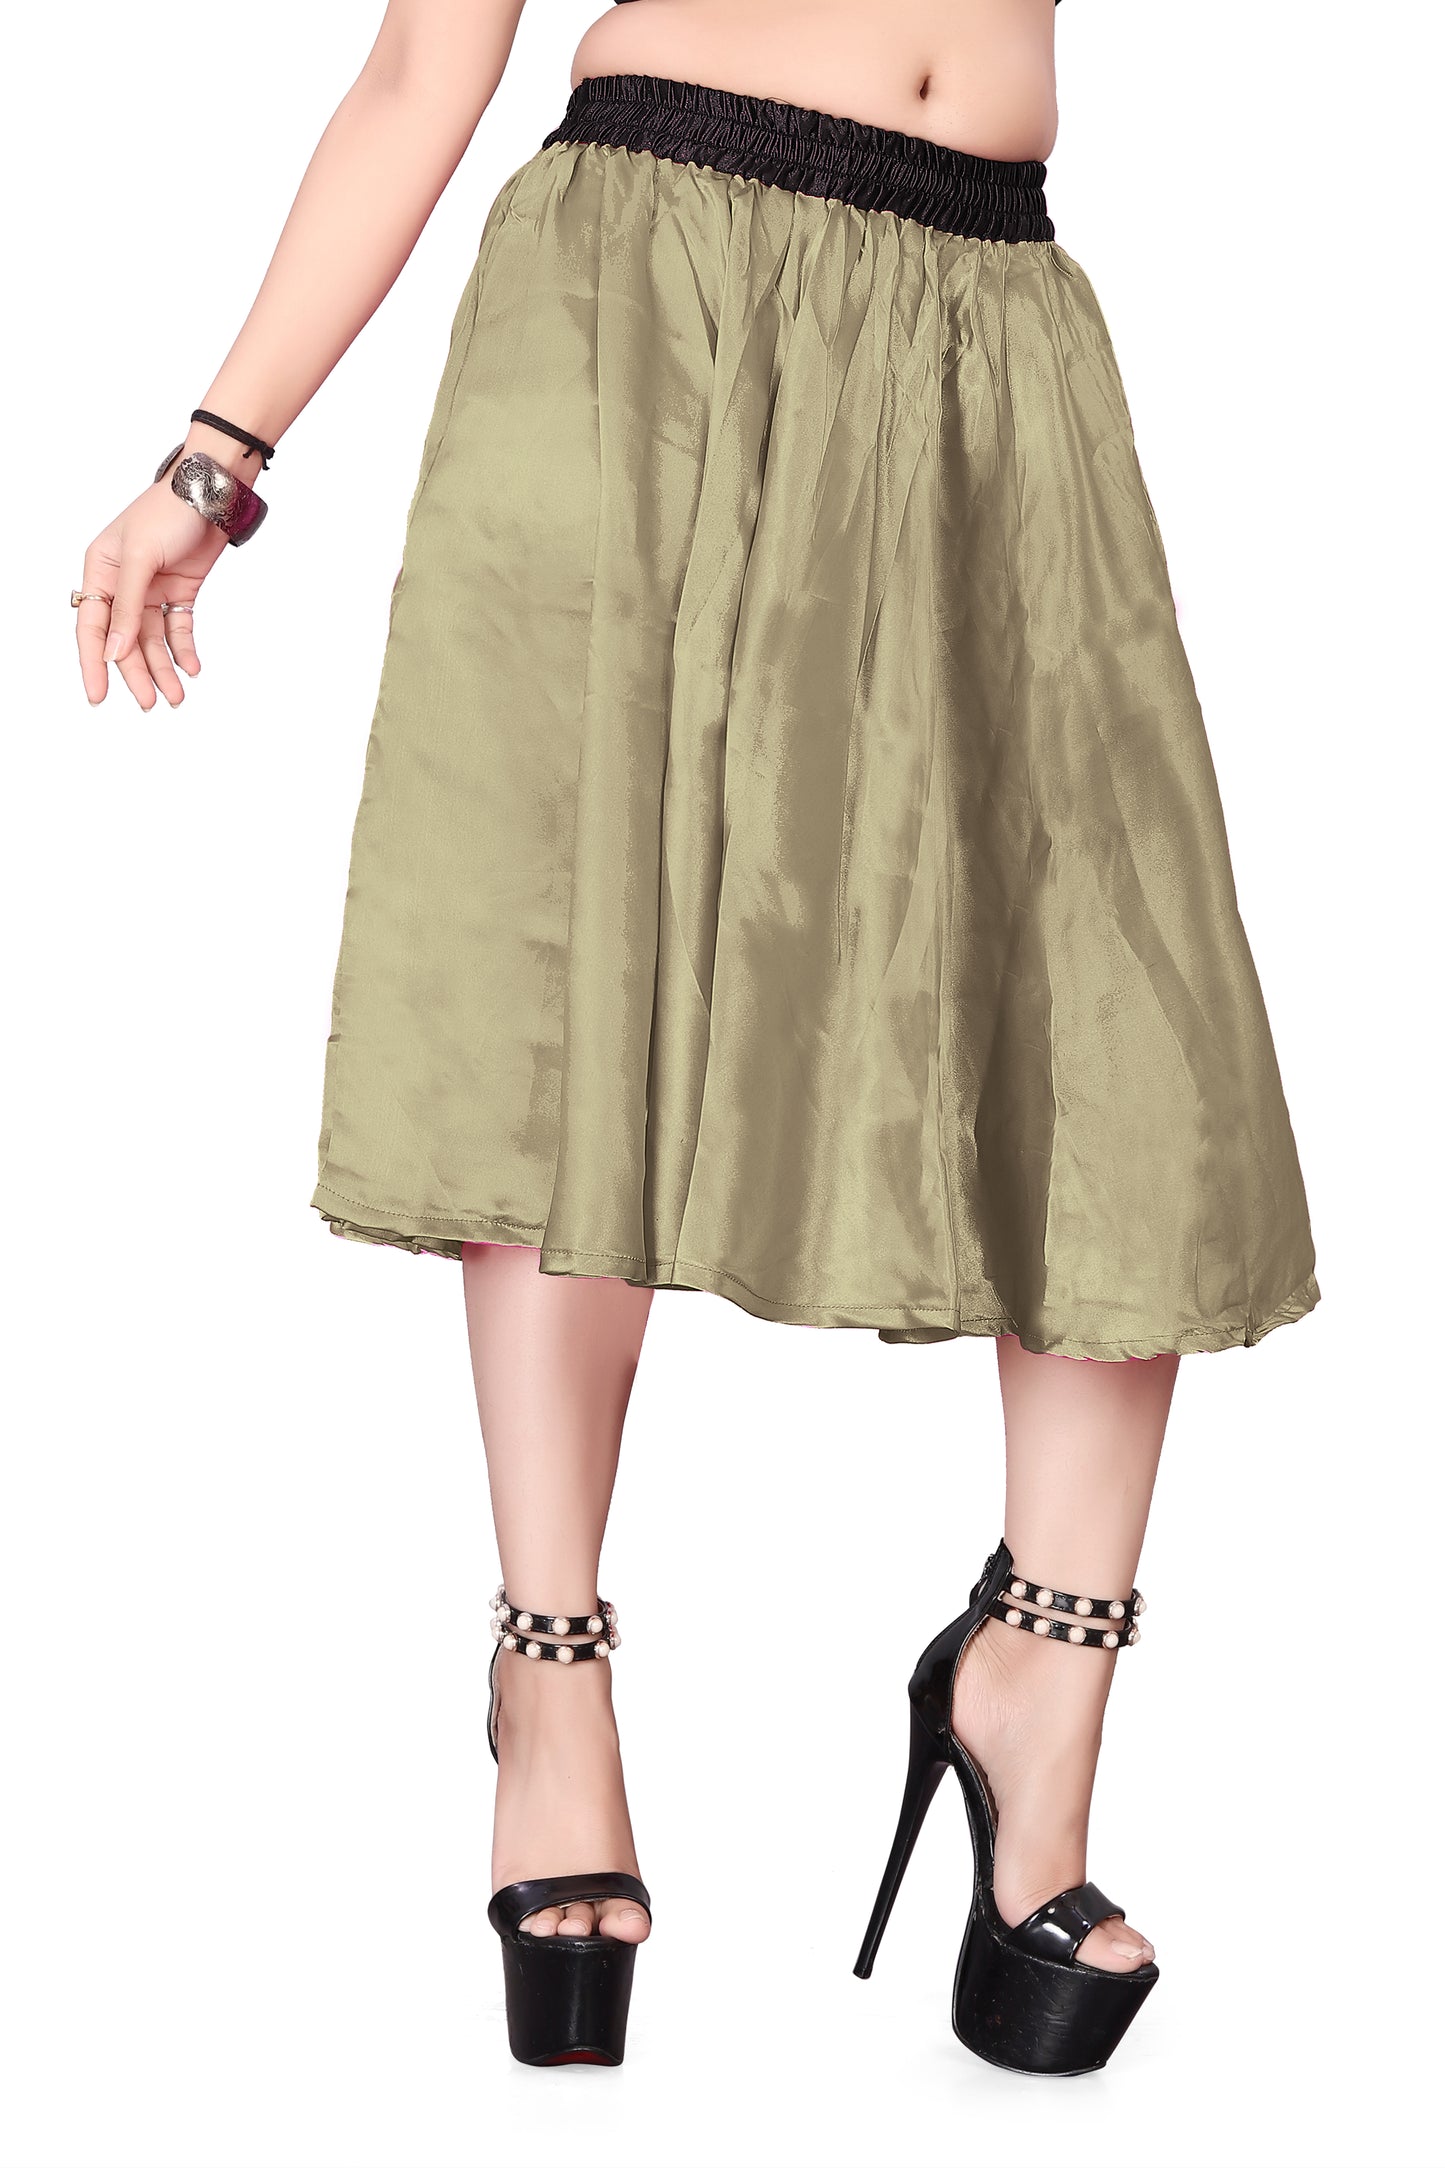 Satin Midi Skirt Party wear Skirt S24-Regular Size 1